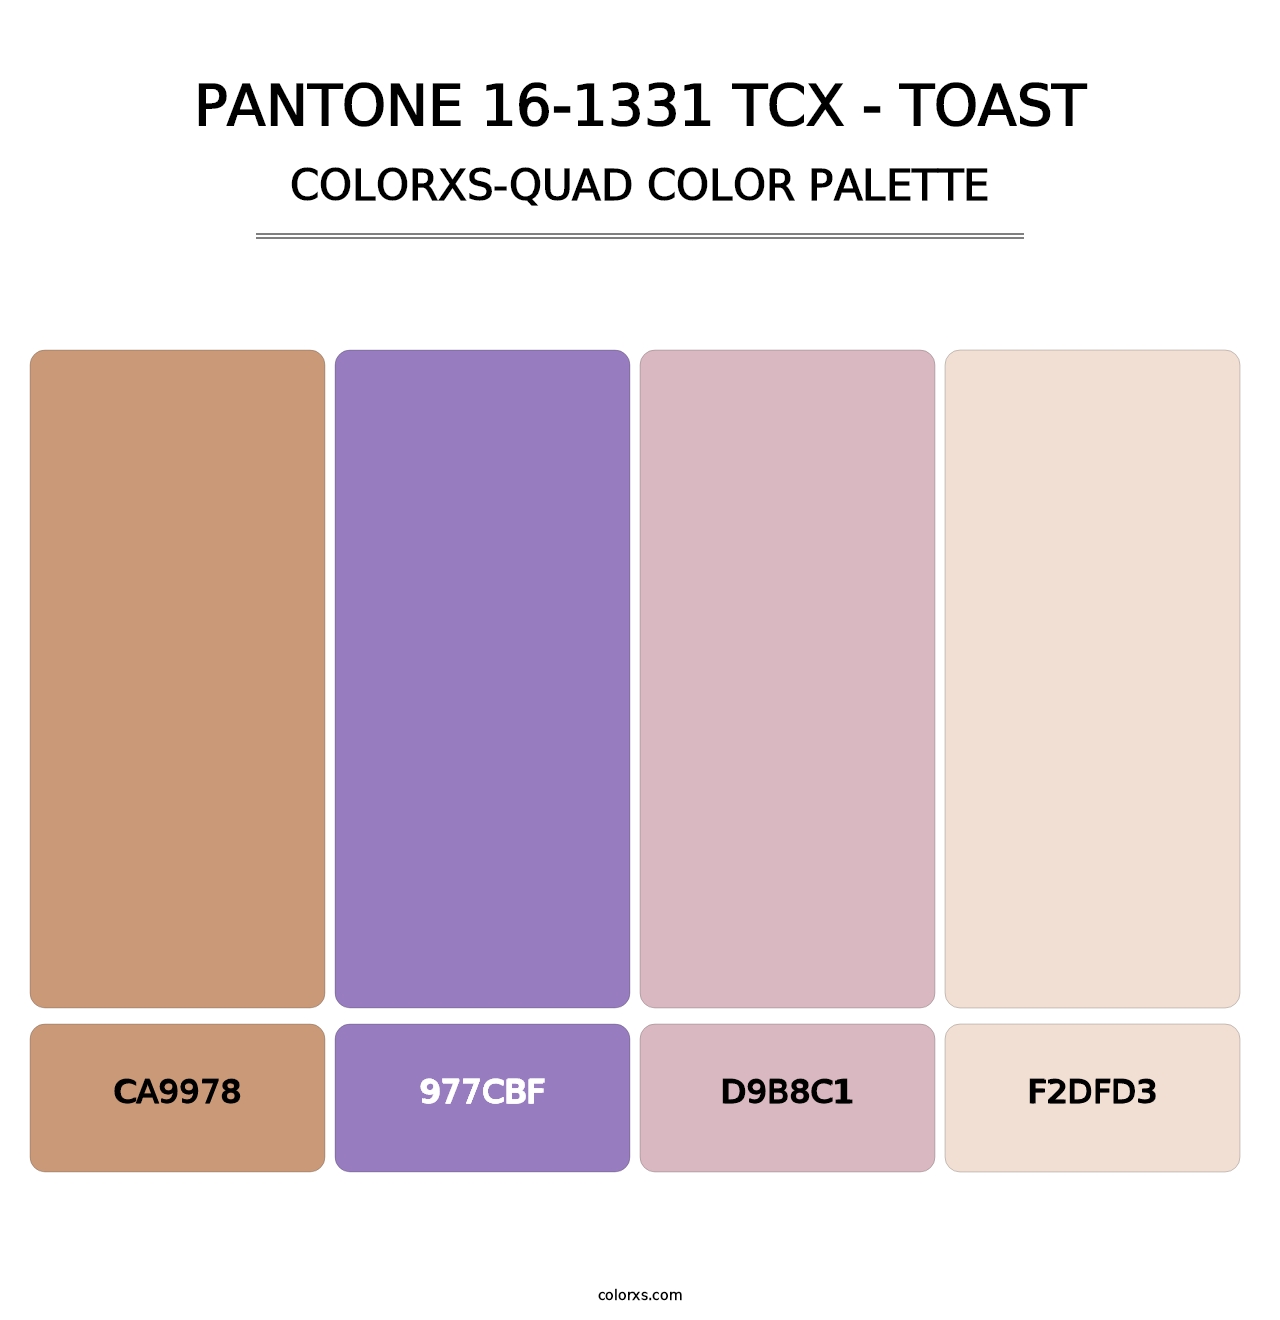 PANTONE 16-1331 TCX - Toast - Colorxs Quad Palette